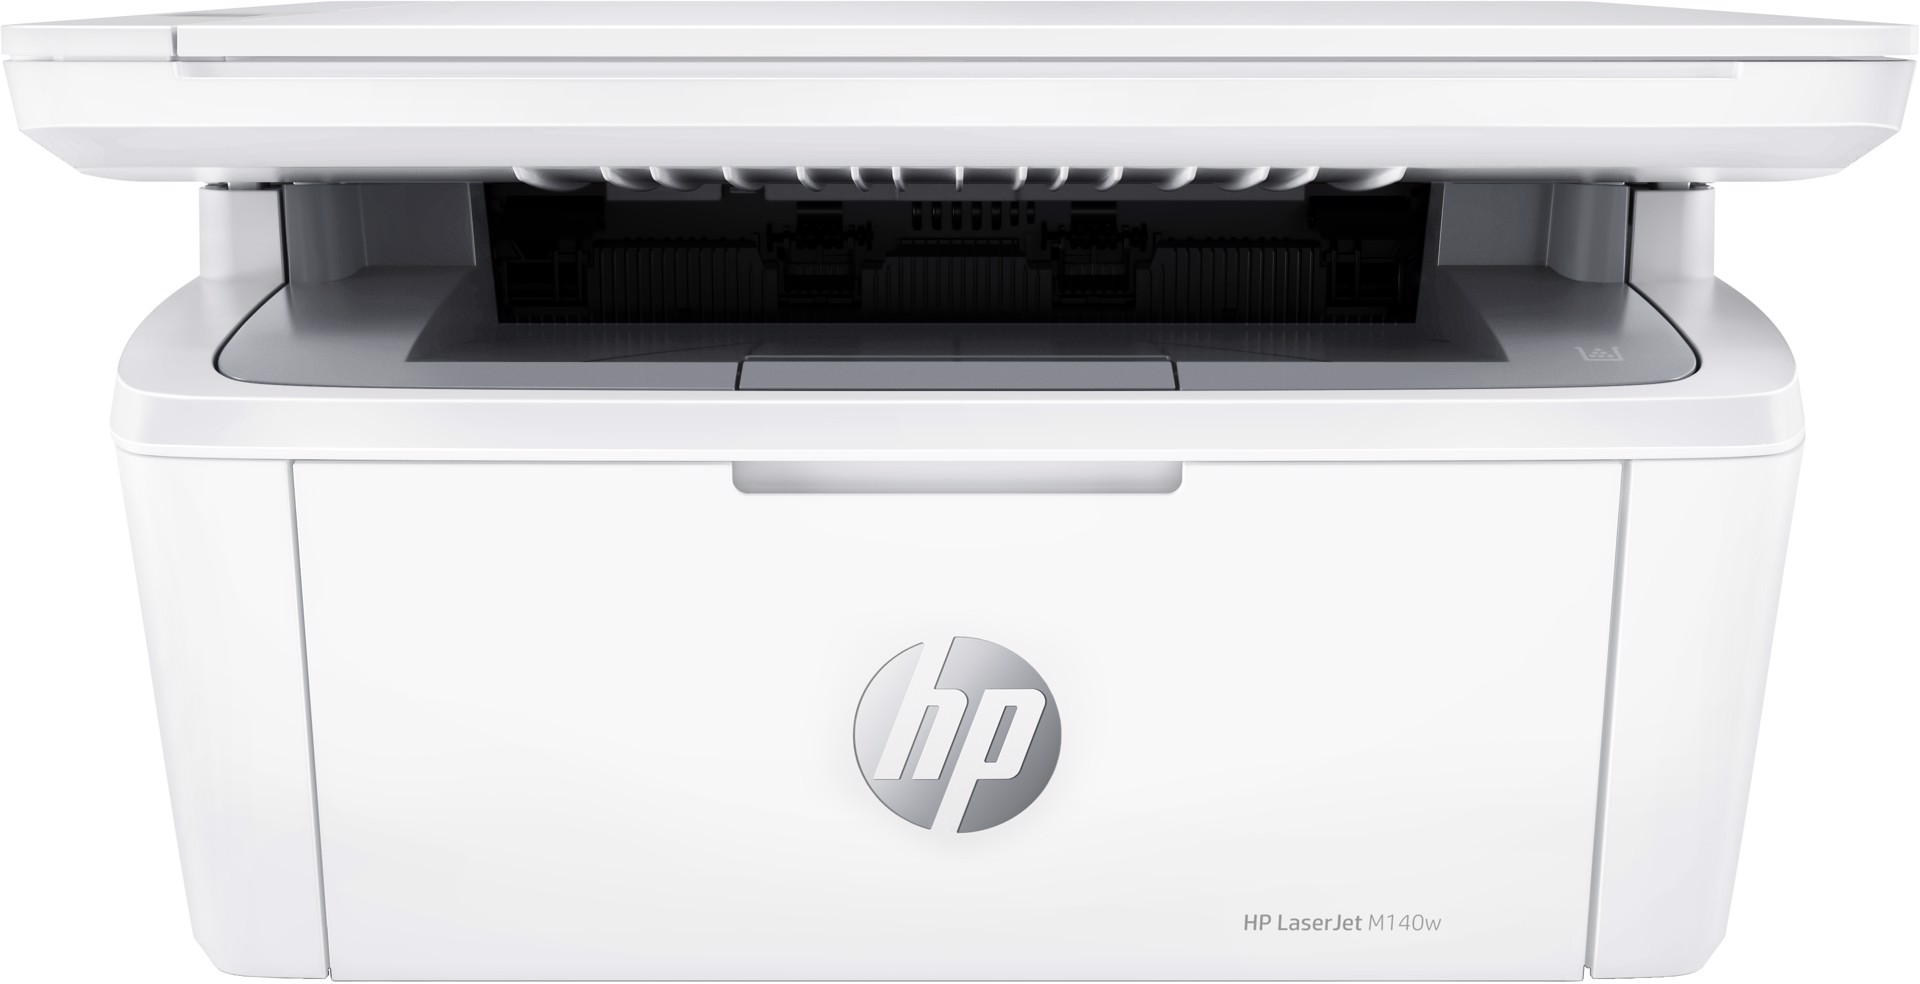 HP LaserJet Stampante multifunzione M140w, Bianco e nero, Stampante per  Piccoli uffici, Stampa, copia, scansione, Scansione verso e-mail; scansione  verso PDF; dimensioni compatte, Stampanti Laser in Offerta su Stay On